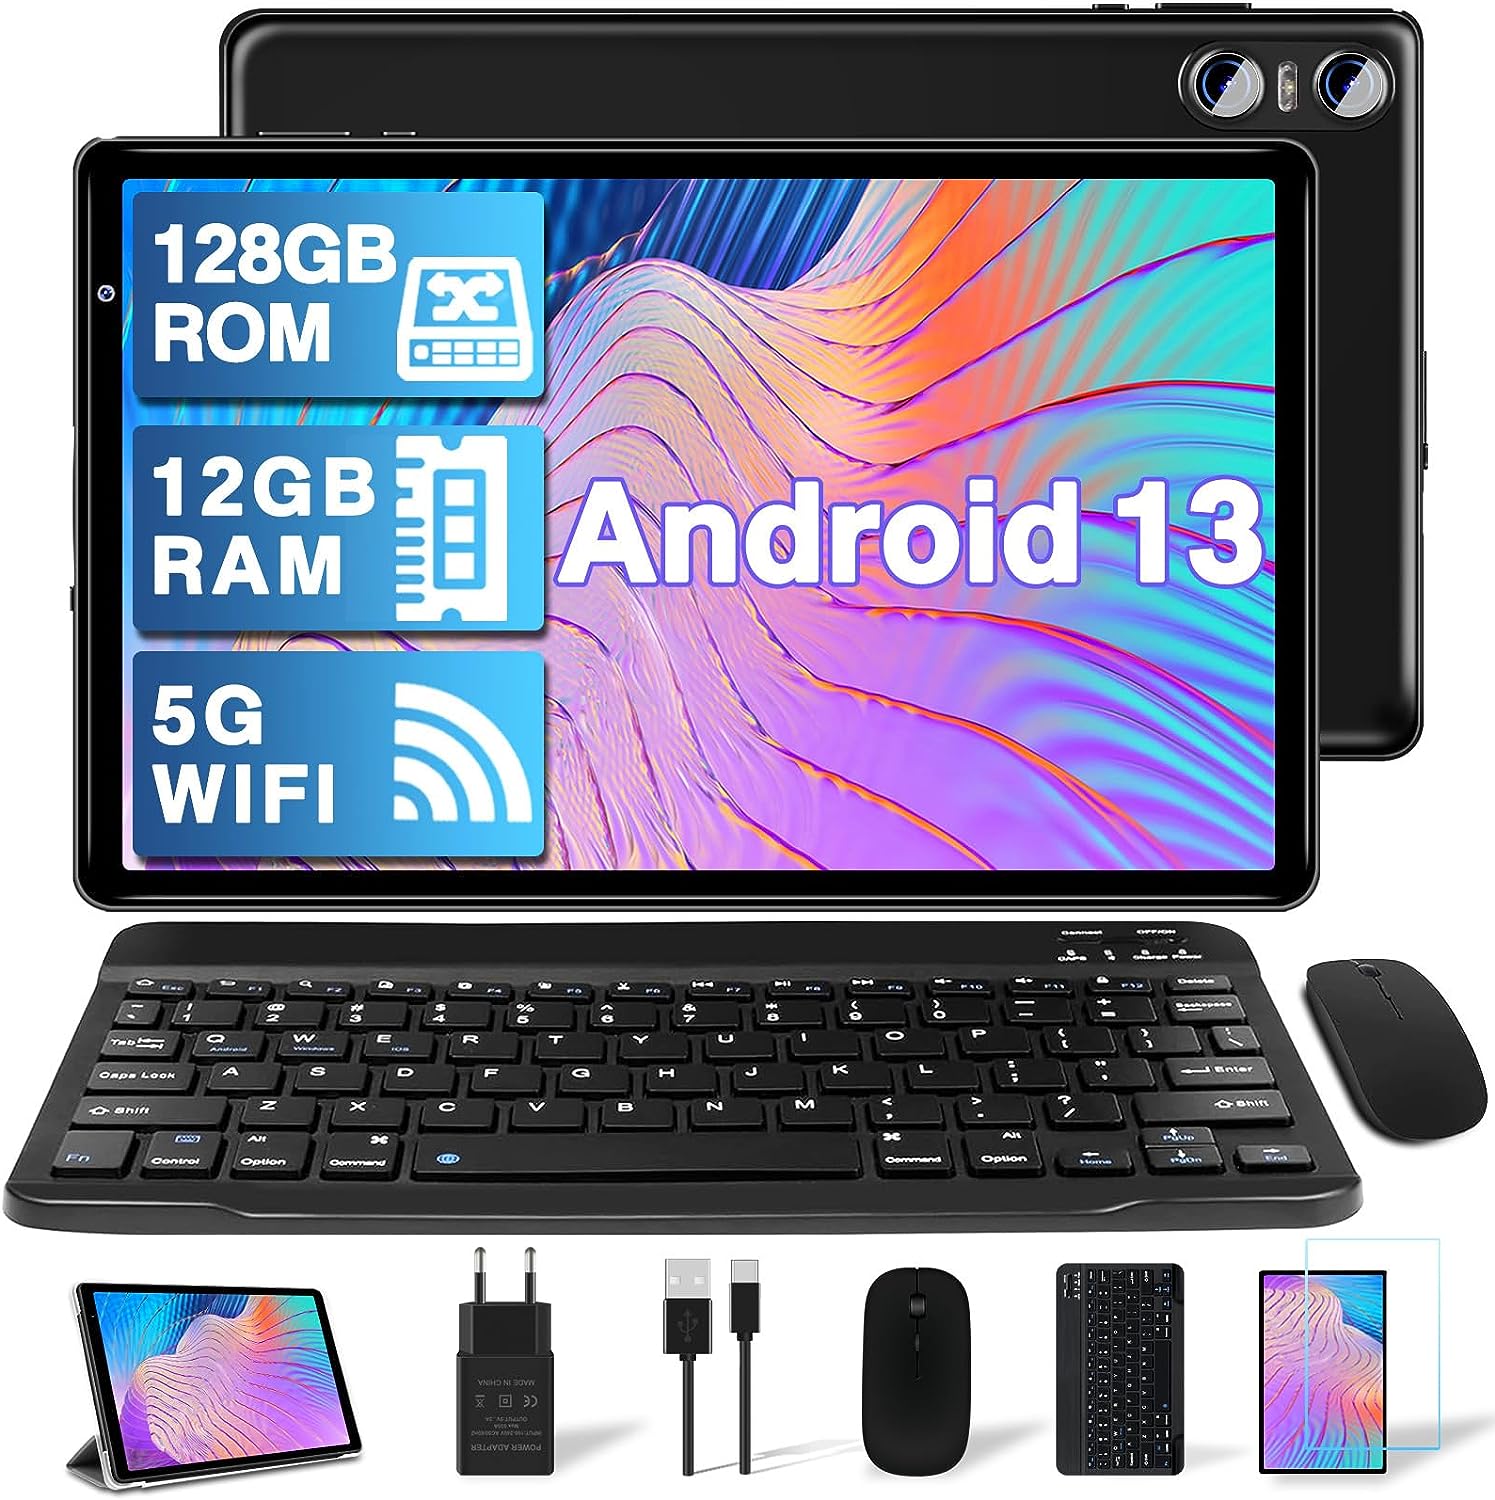 Tablet Android da 10 con tastiera e mouse inclusi a MENO di 100€